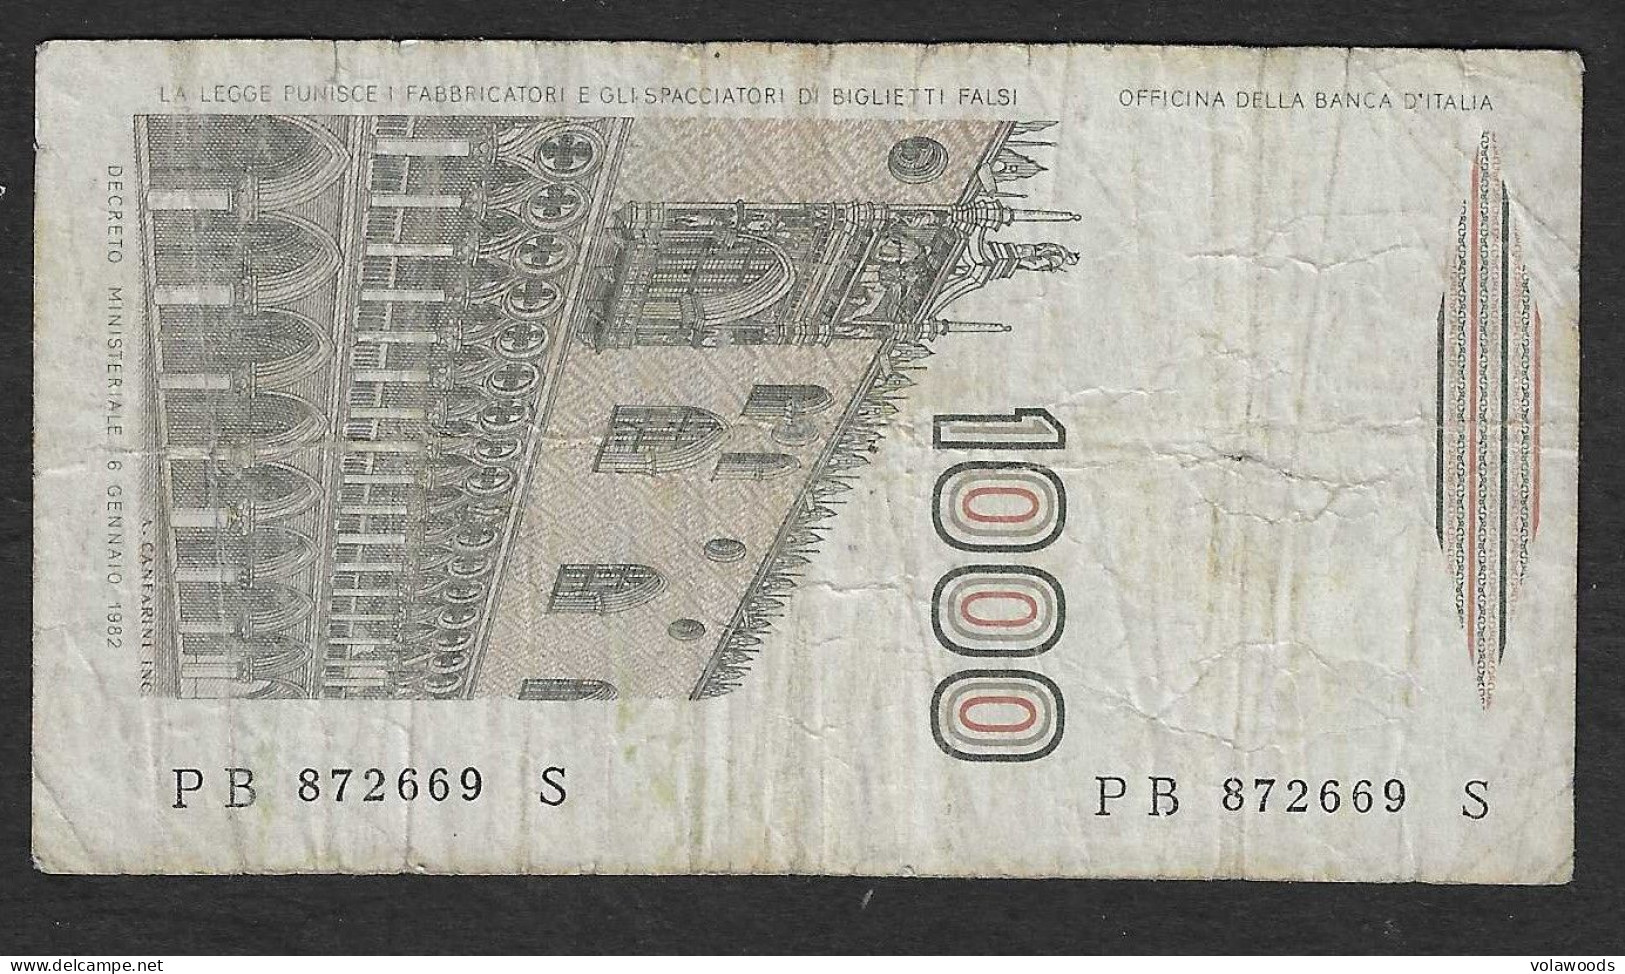 Italia - Banconota Circolata Da 1000 Lire "Marco Polo" Suffisso "B" P-109a.2 - 1983 #19 - 1000 Lire